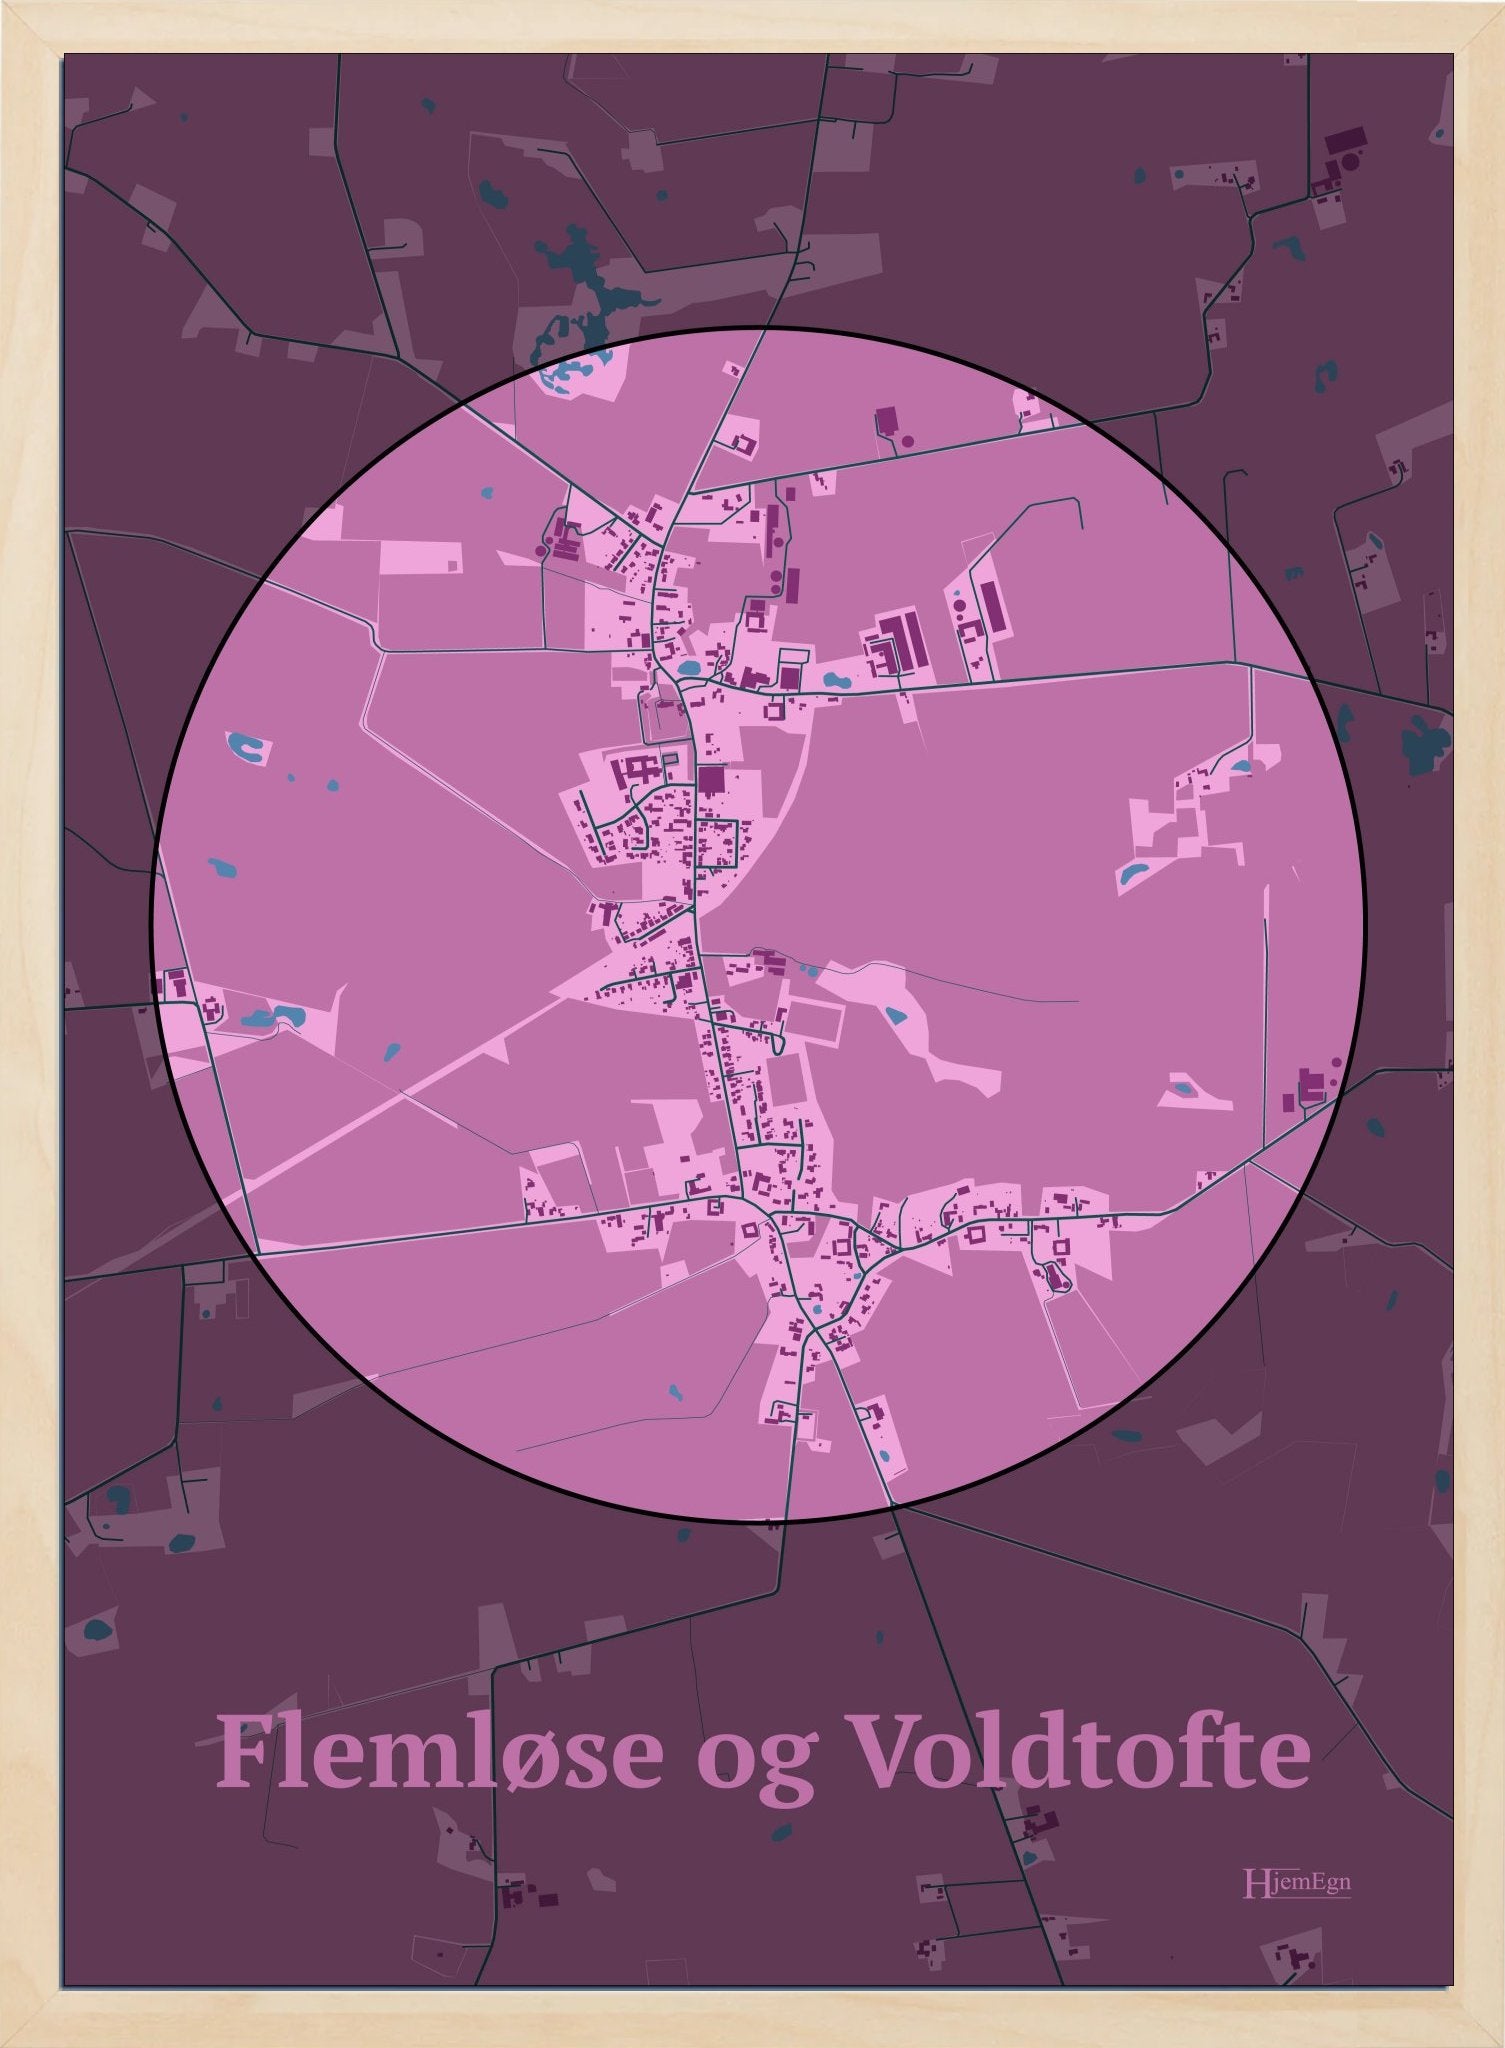 Flemløse & Voldtofte plakat i farve pastel rød og HjemEgn.dk design centrum. Design bykort for Flemløse & Voldtofte